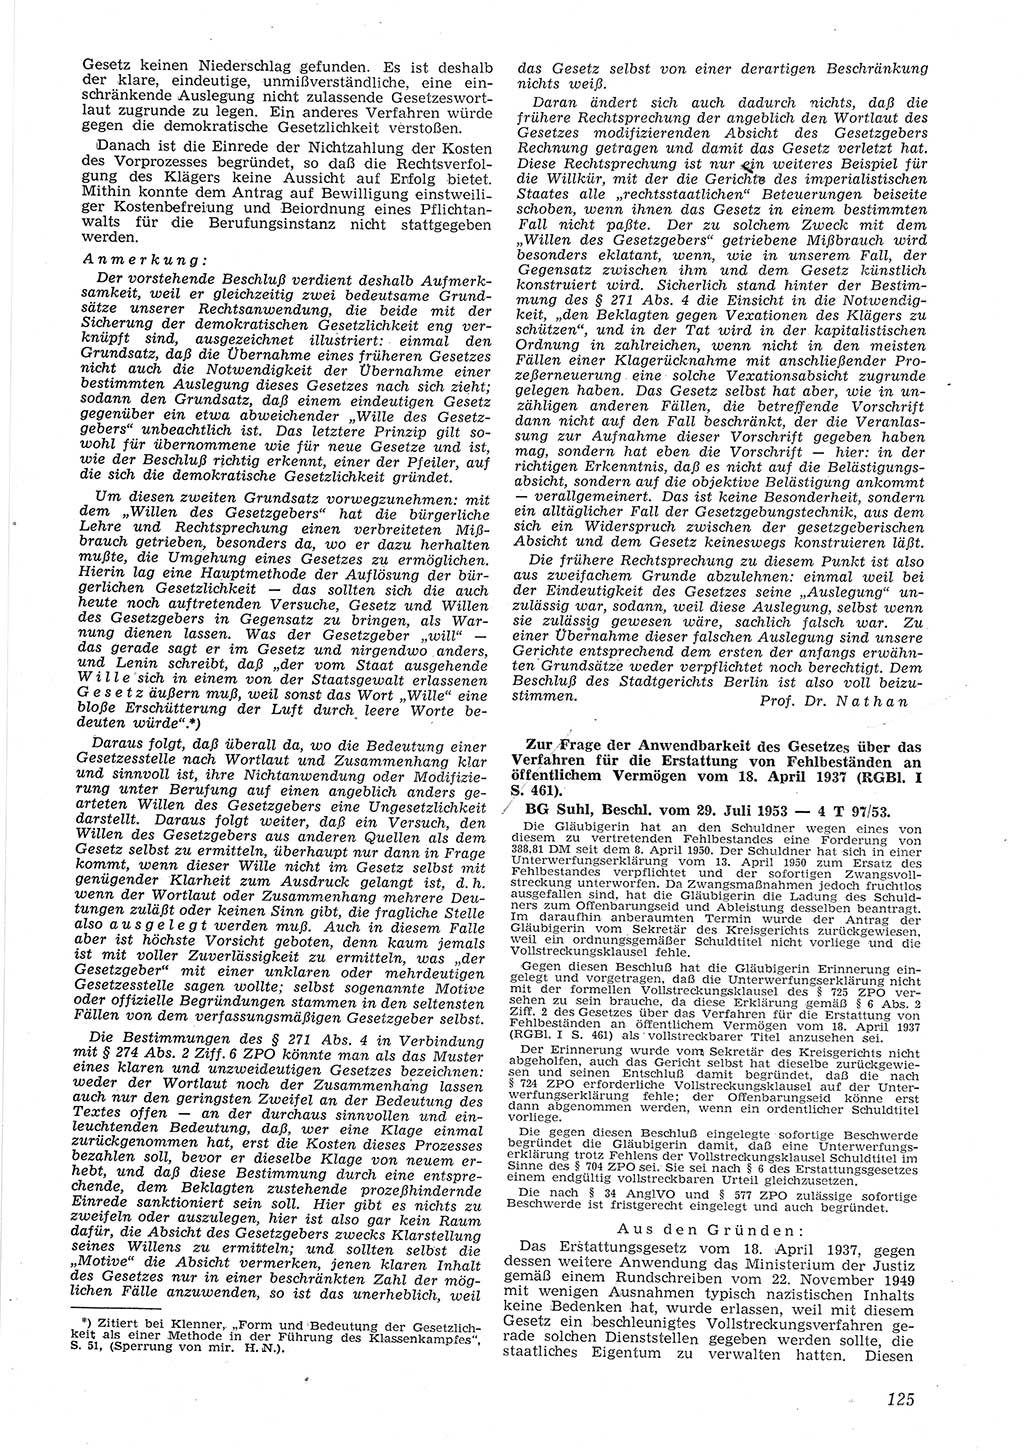 Neue Justiz (NJ), Zeitschrift für Recht und Rechtswissenschaft [Deutsche Demokratische Republik (DDR)], 8. Jahrgang 1954, Seite 125 (NJ DDR 1954, S. 125)